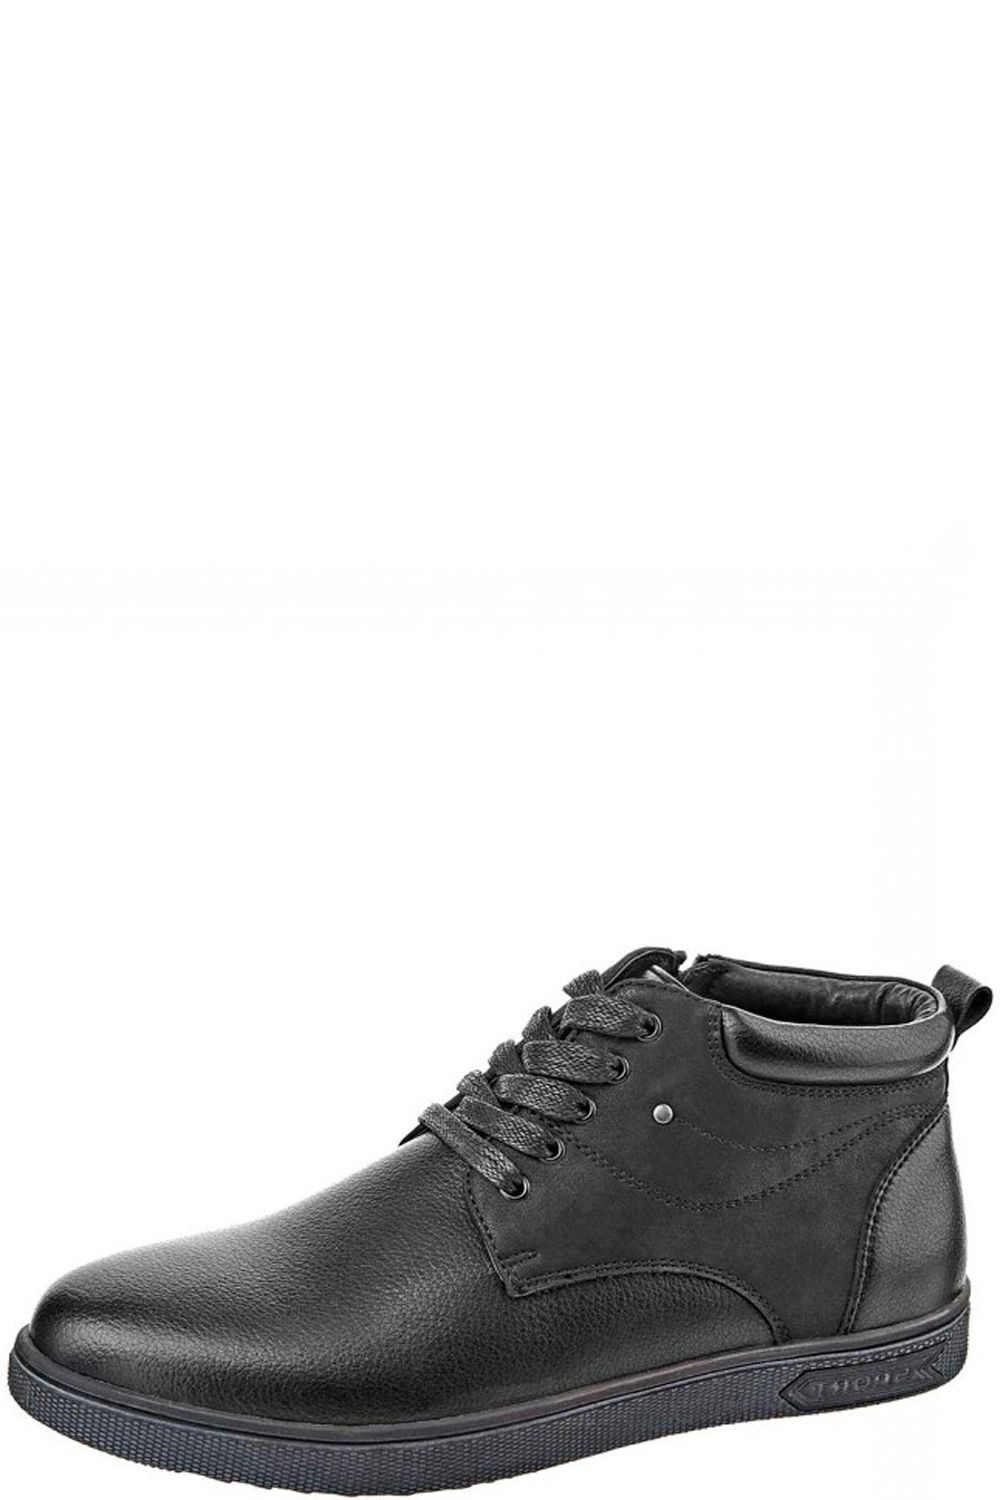 Ботинки Tesoro, размер 39, цвет черный 168657/02-11 - фото 1